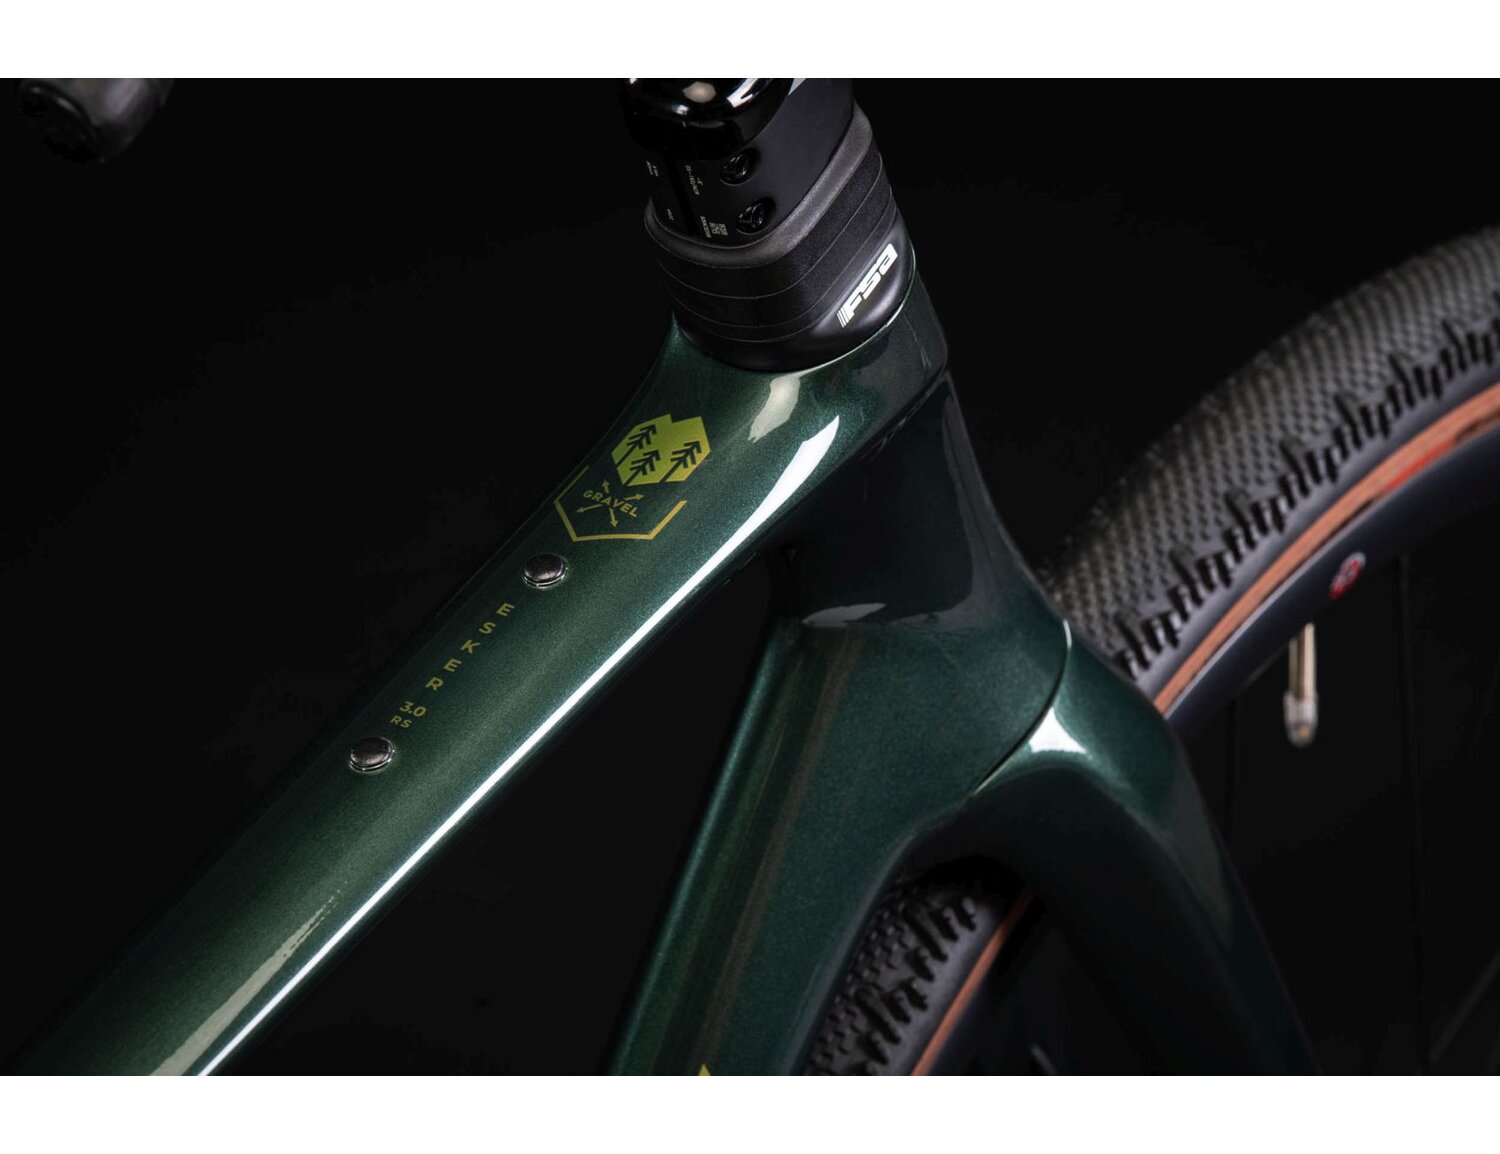 Carbonowa rama i symbol gravela w rowerze gravelowym KROSS Esker RS 3.0 